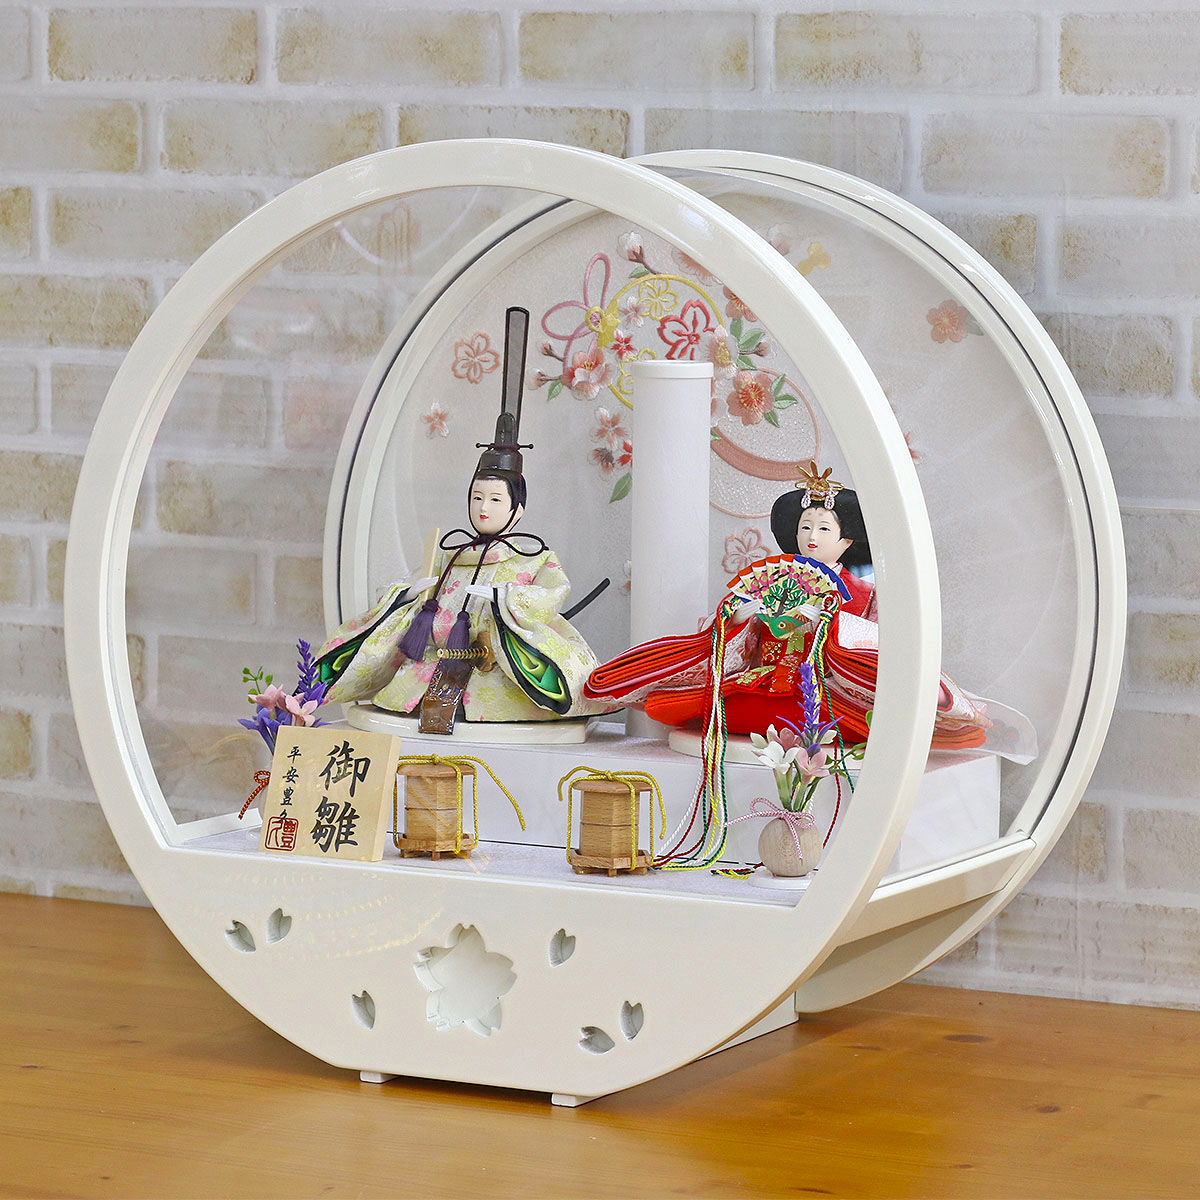 【楽天市場】雛人形 平安豊久 コンパクト ケース飾り 円形 丸型 白 